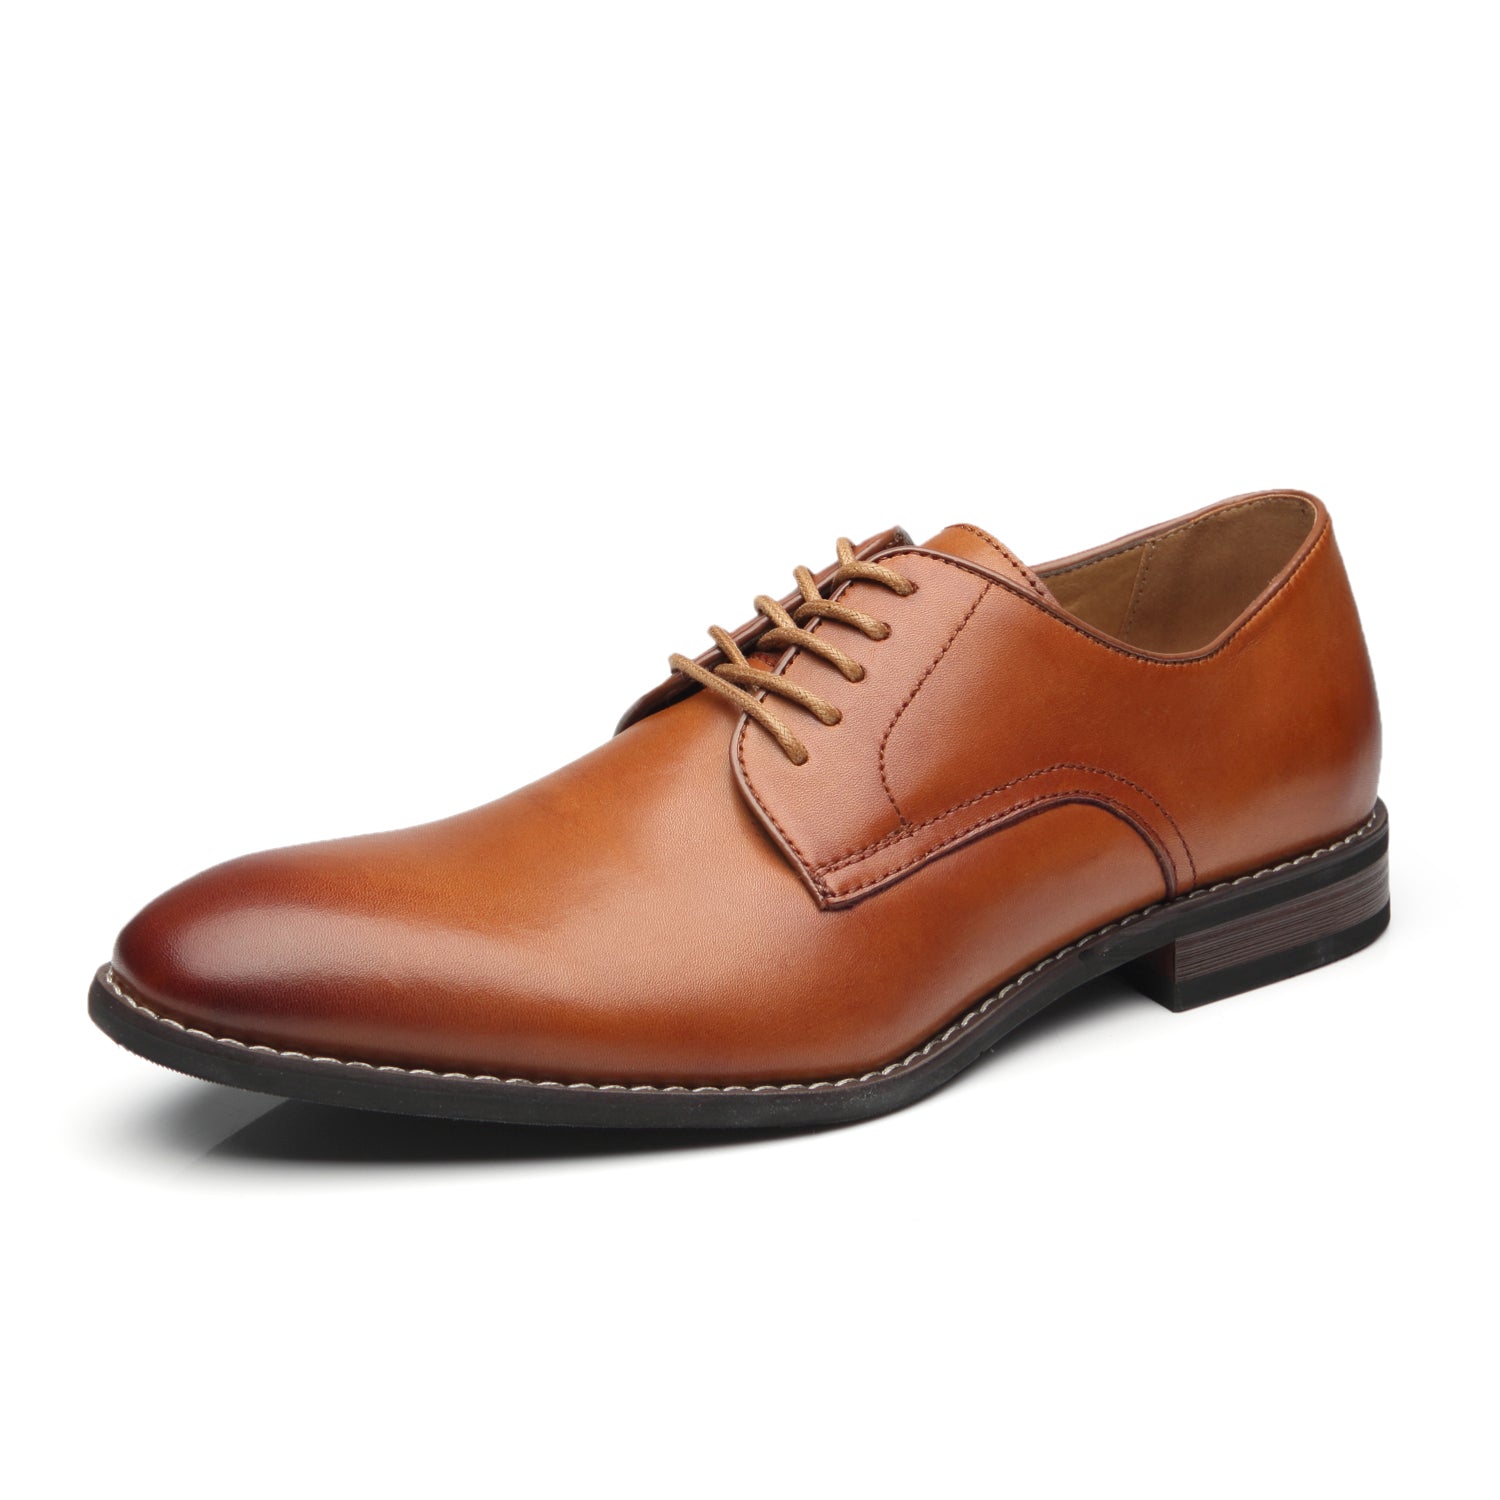 Men's Lace Up Cabey-1-cognac | La Milano Mens Shoes